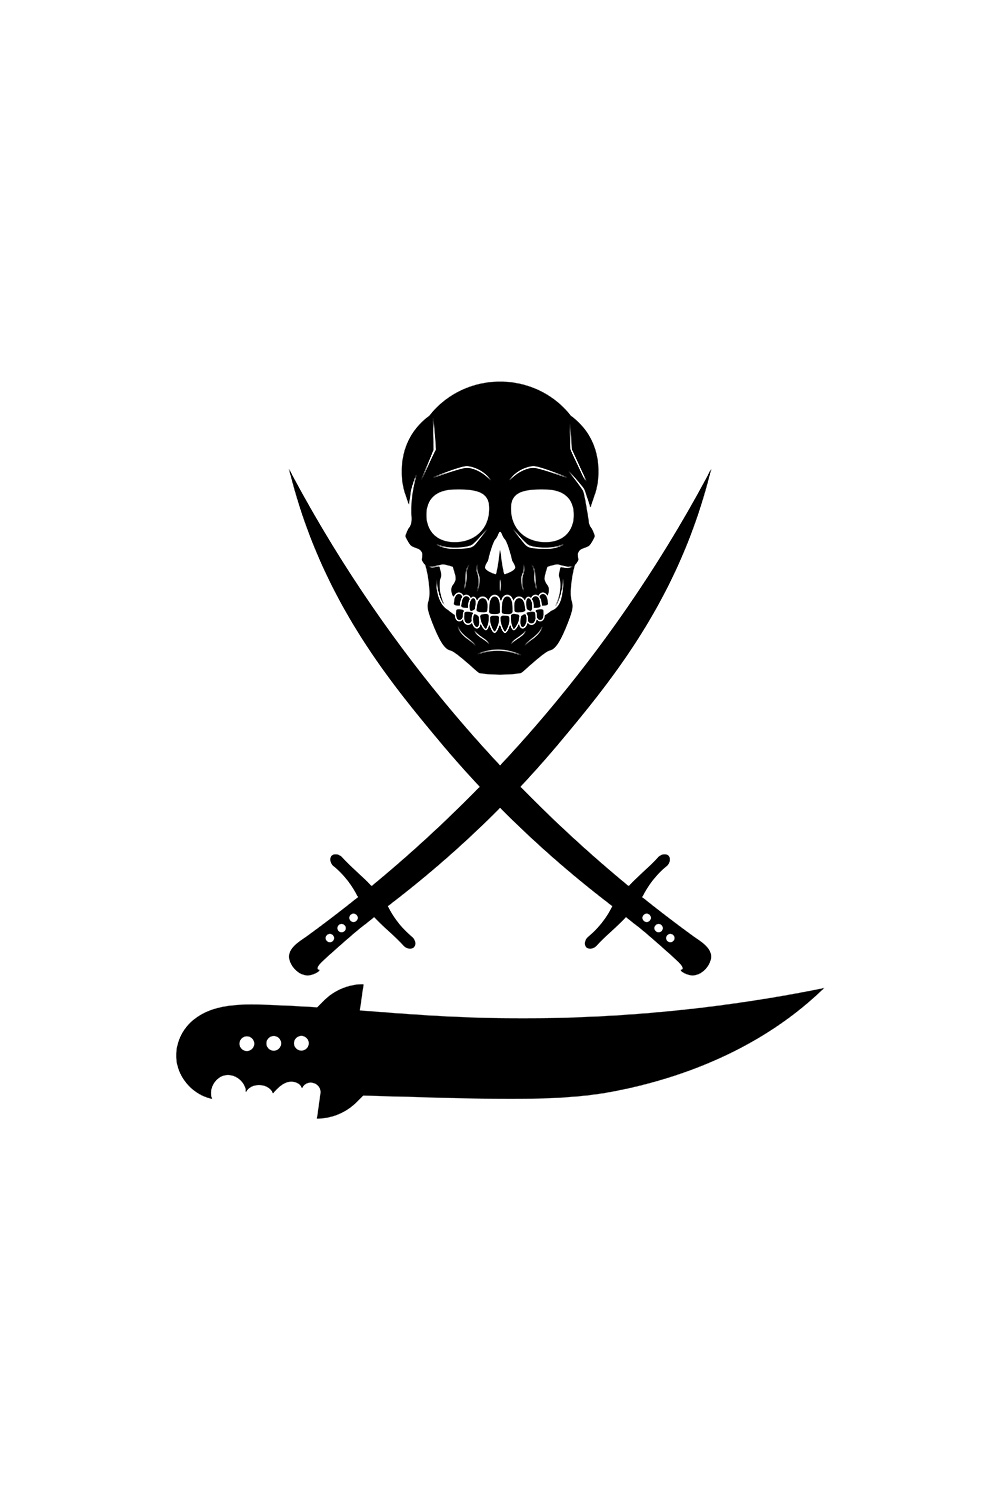 Skull, Two Crossed Swords, knife pinterest preview image.